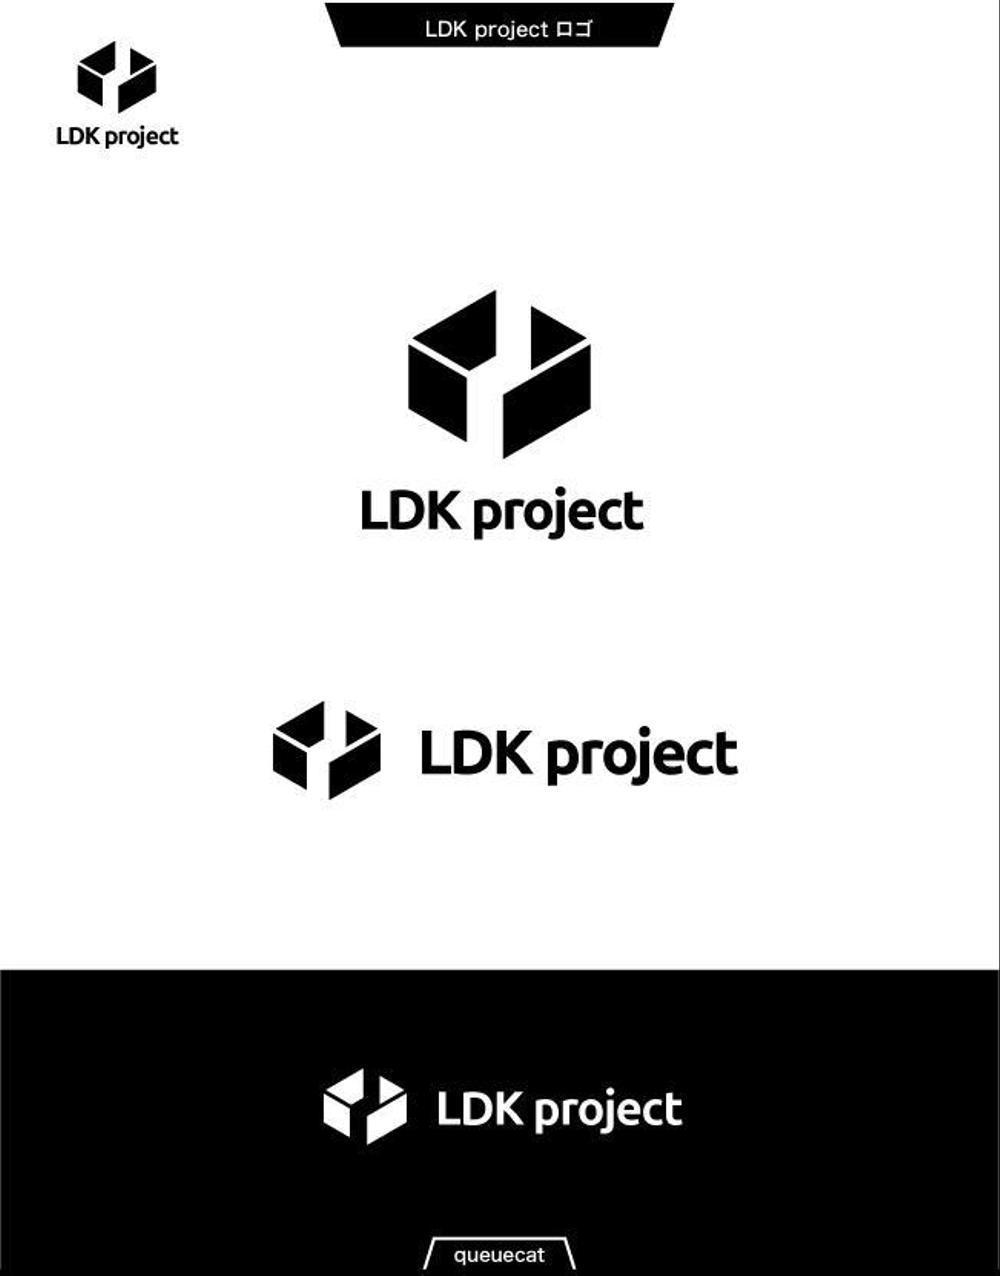 LDK project1_1.jpg